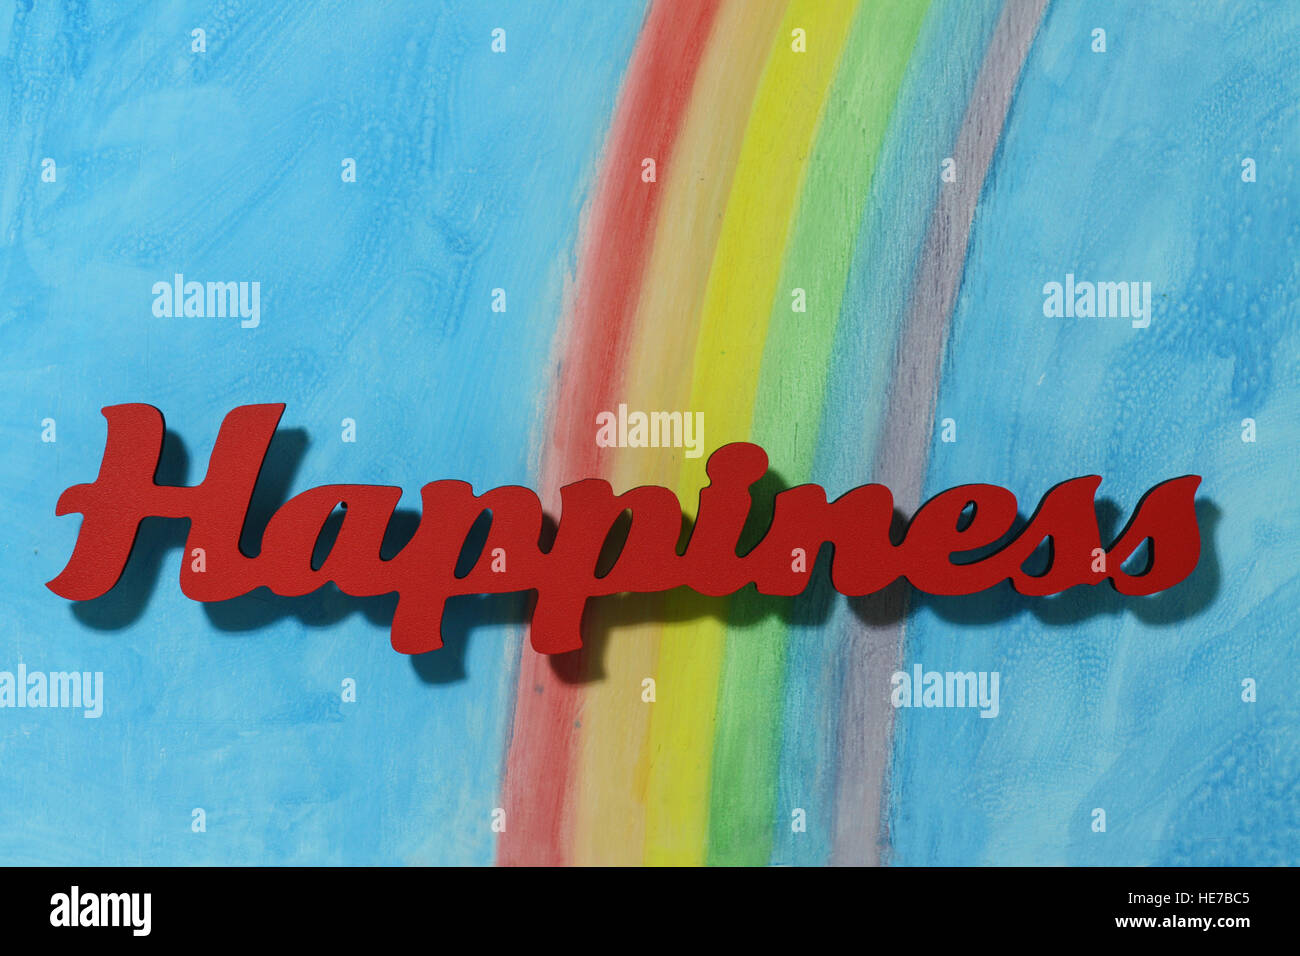 L'orthographe des lettres rouges le mot bonheur pour illustrer le concept de joie, heureux, l'amour et le bien-être, Close up. Banque D'Images